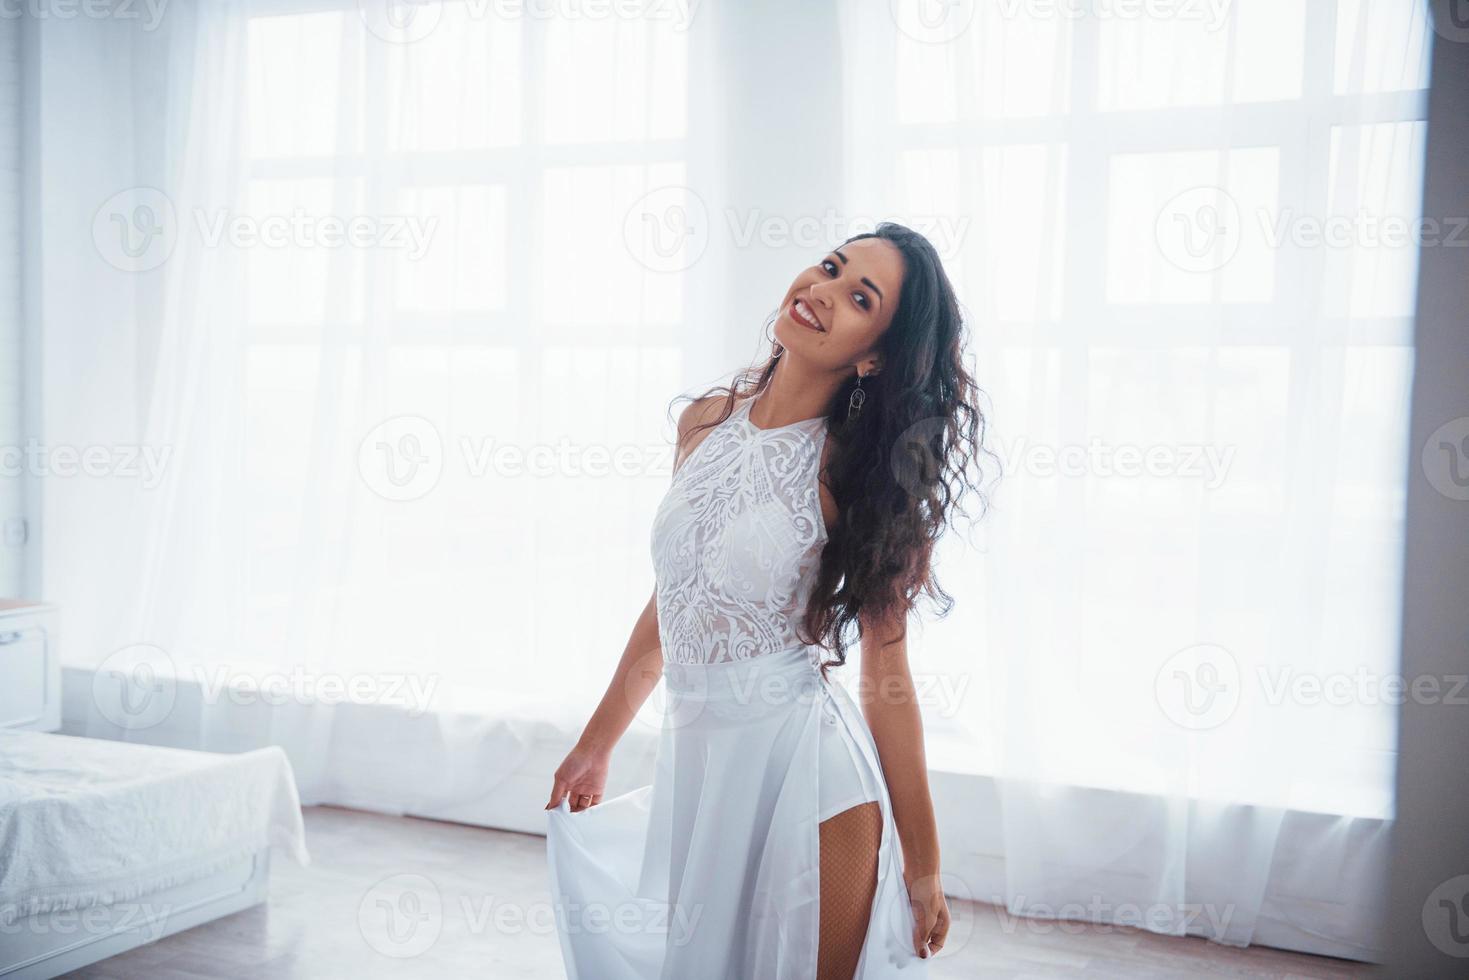 satisfait et gratuit. belle femme en robe blanche se tient dans une pièce blanche avec la lumière du jour à travers les fenêtres photo